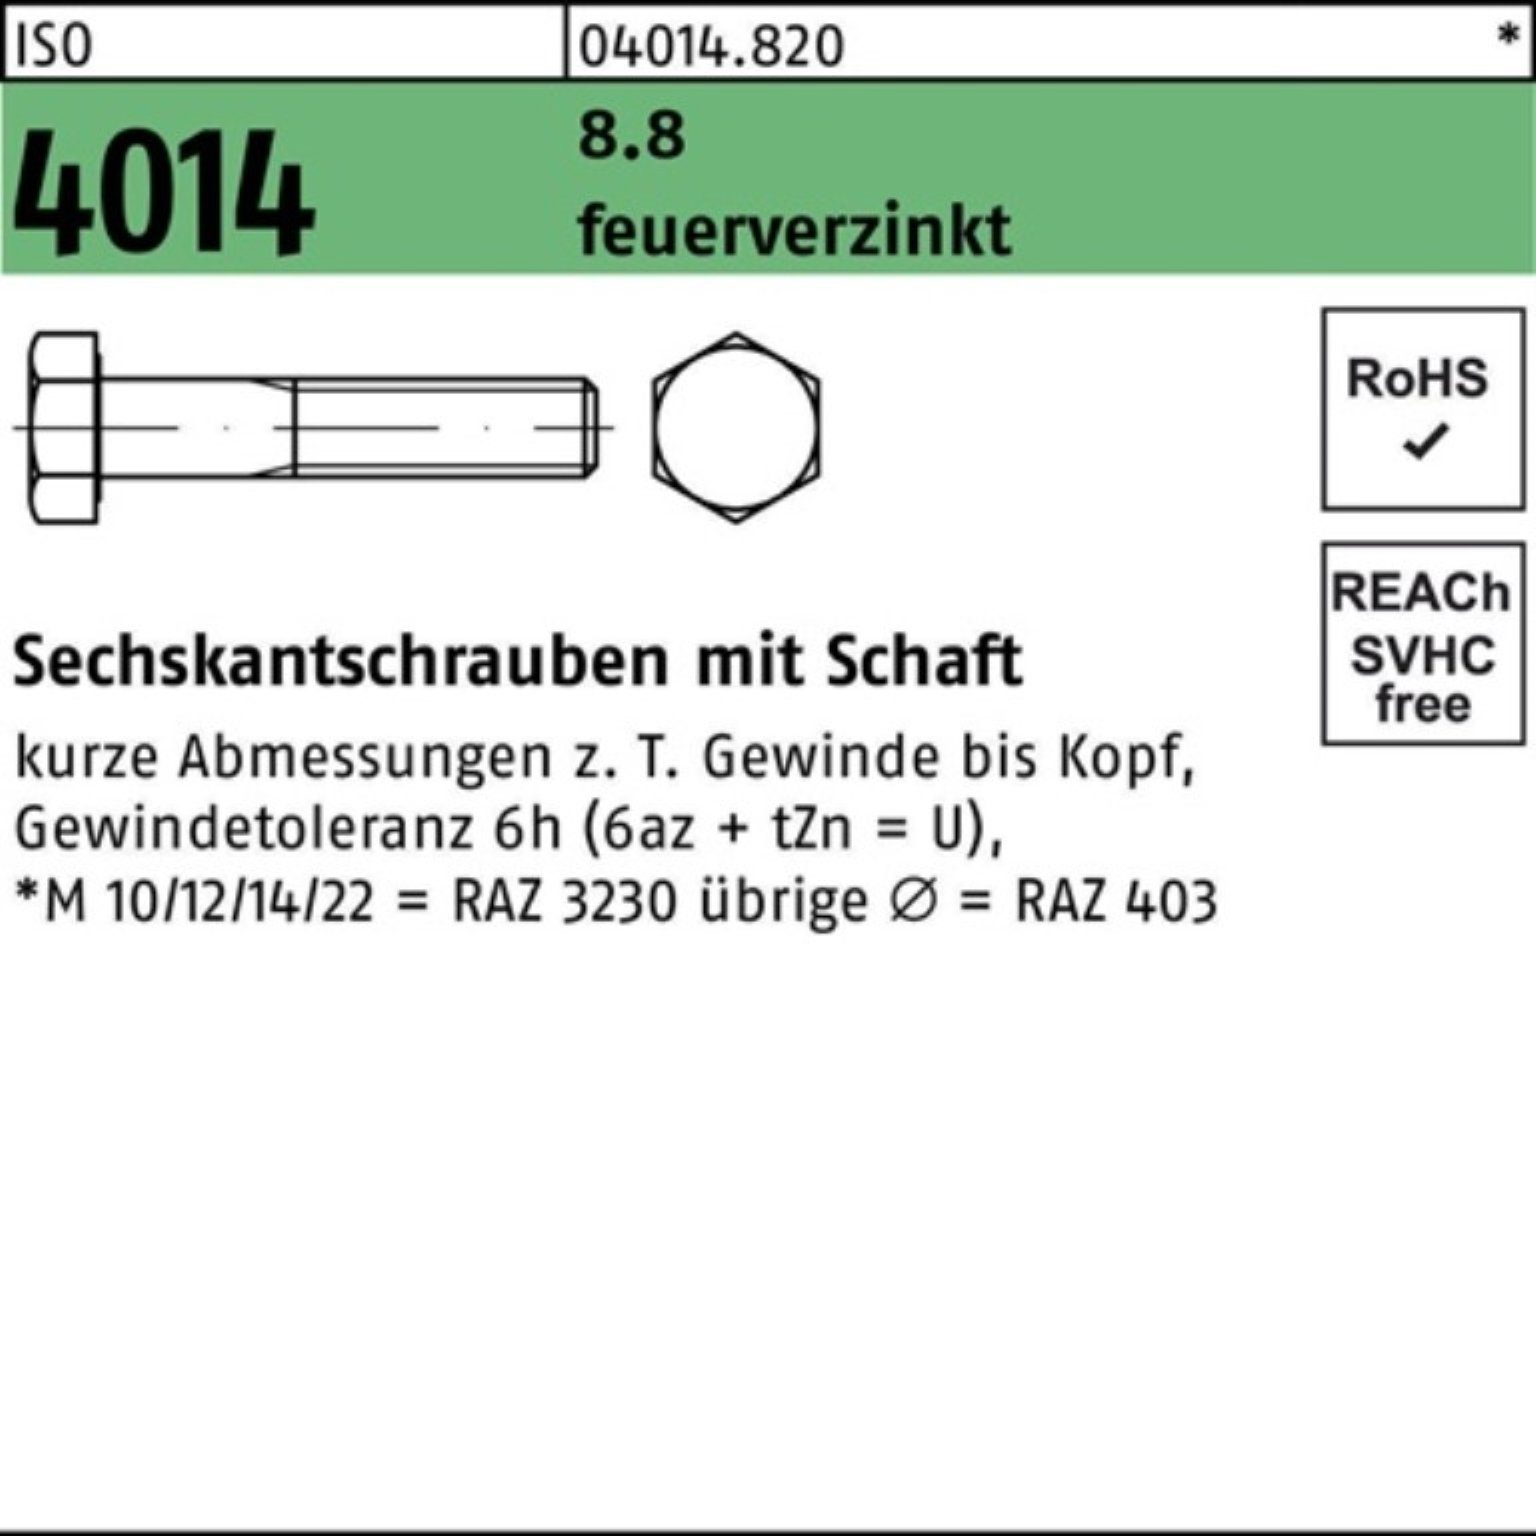 Bufab Sechskantschraube 100er Pack Sechskantschraube ISO 4014 Schaft M36x 220 8.8 feuerverz. 1